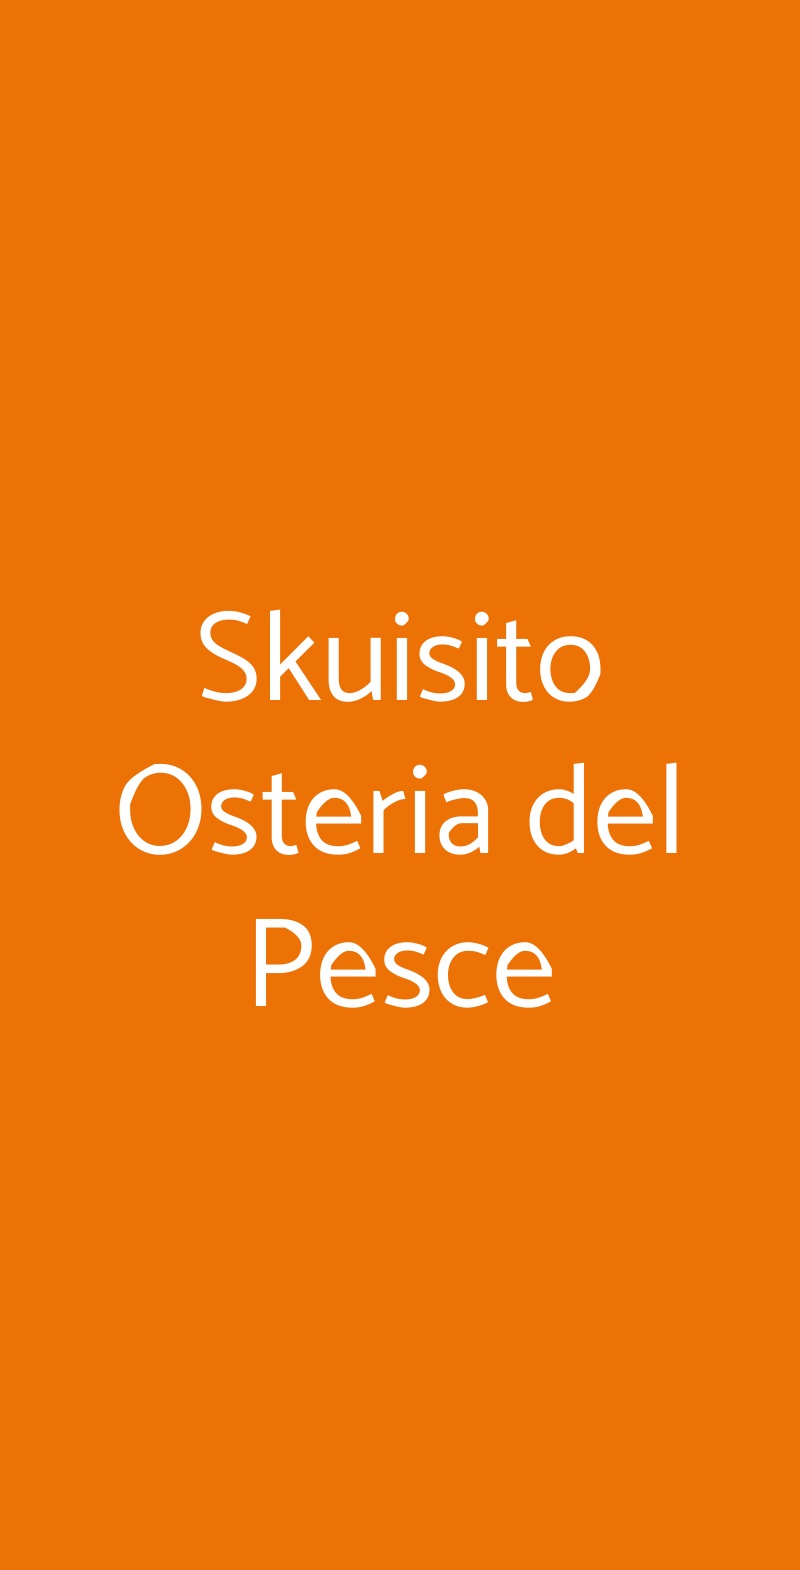 Skuisito Osteria del Pesce Milano menù 1 pagina